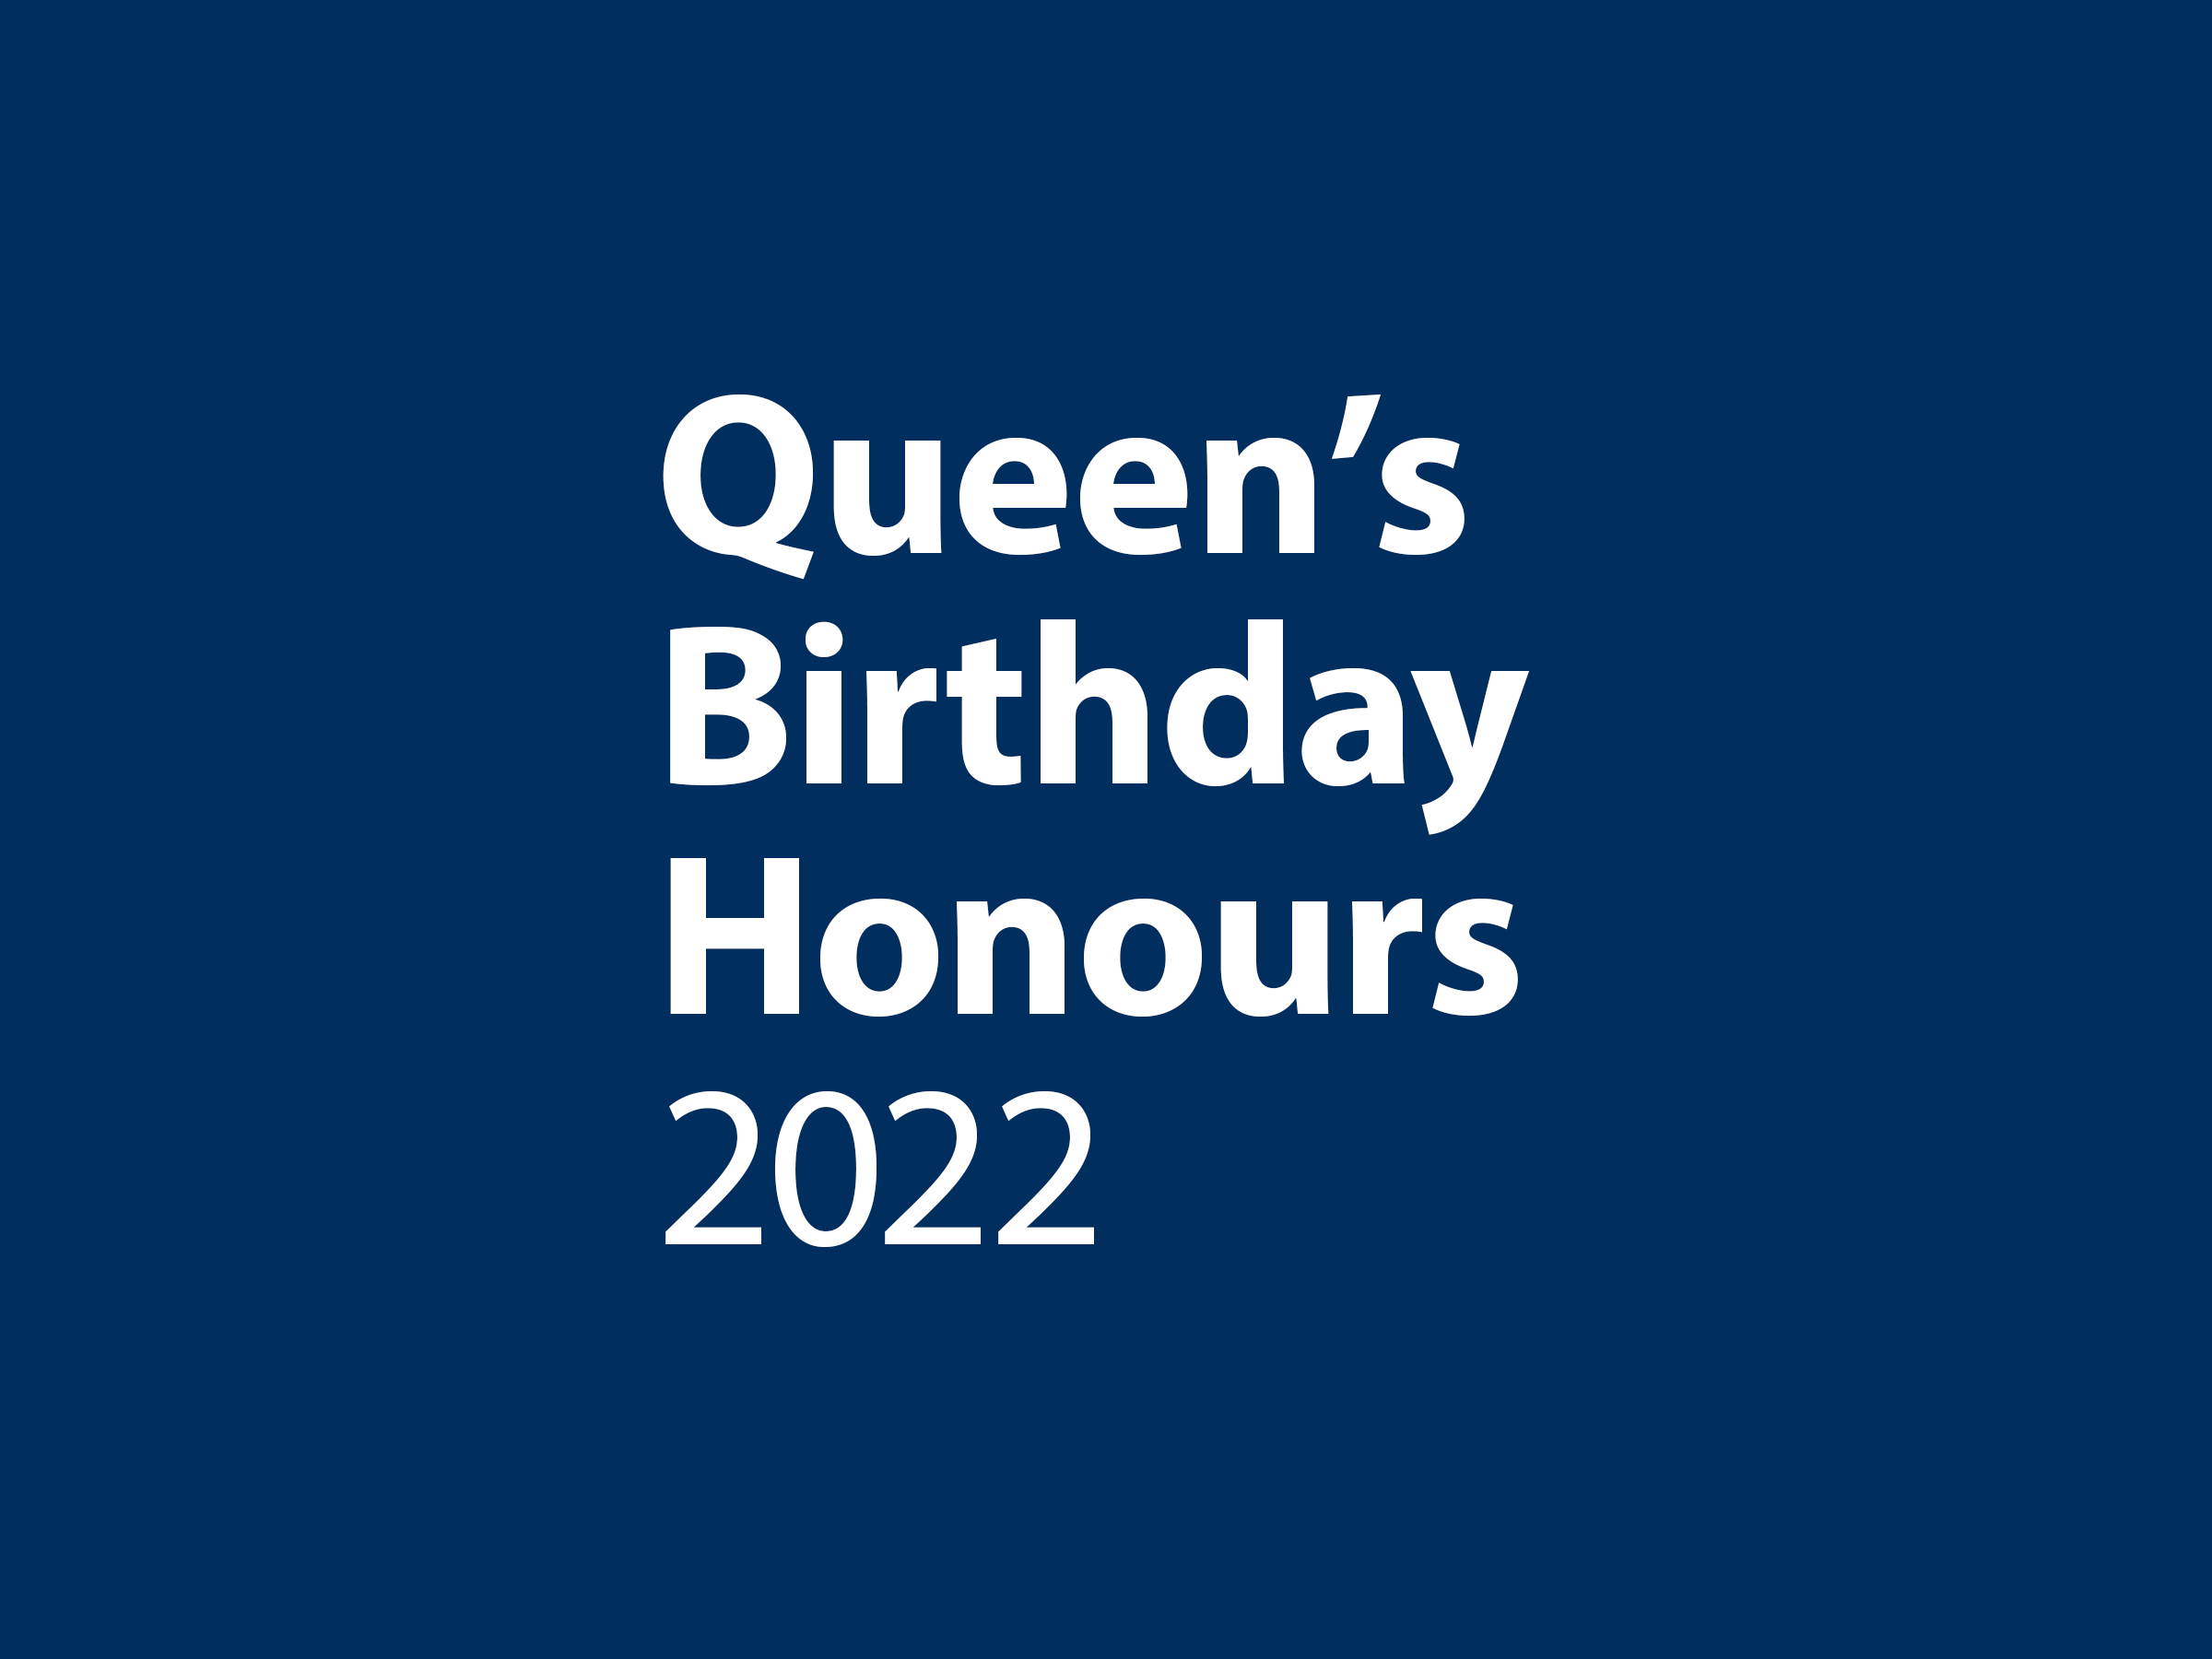 Queen's Birthday Honours 2022 banner.